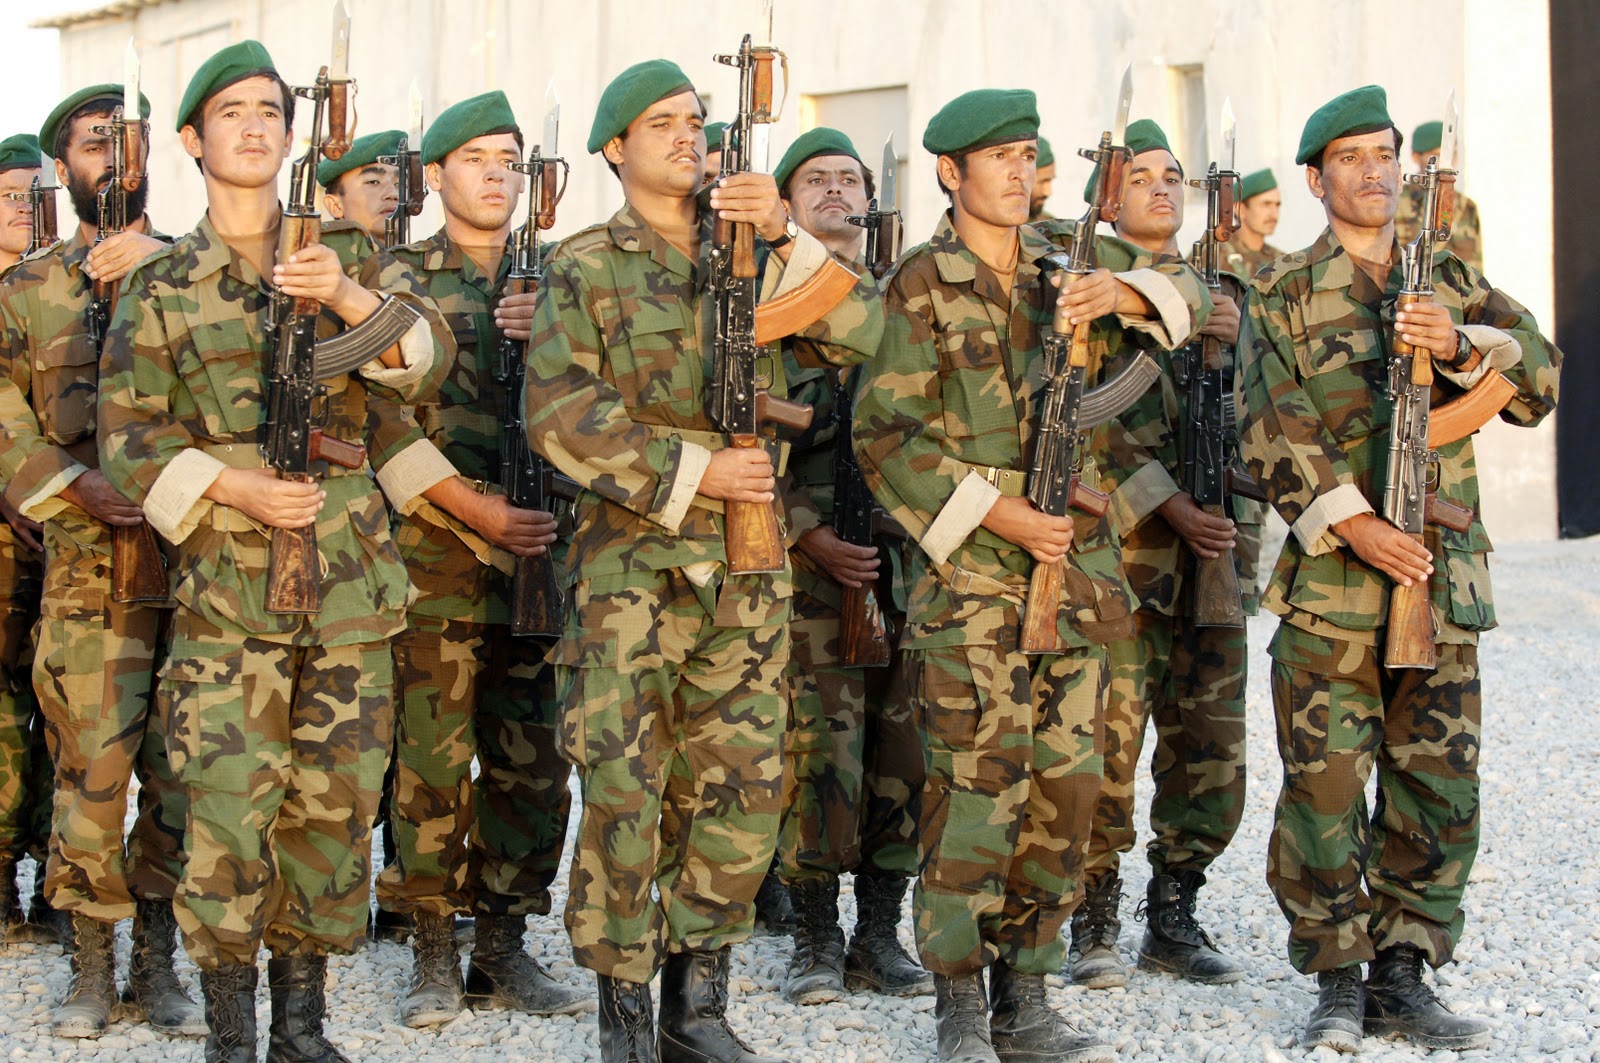 http://3.bp.blogspot.com/-_bqKMivCWrM/TZCy8lI-2NI/AAAAAAAAAFw/oOYmxXAq0nY/s1600/Soldiers_of_the_205th_Afghan_National_Army_Corps.jpg